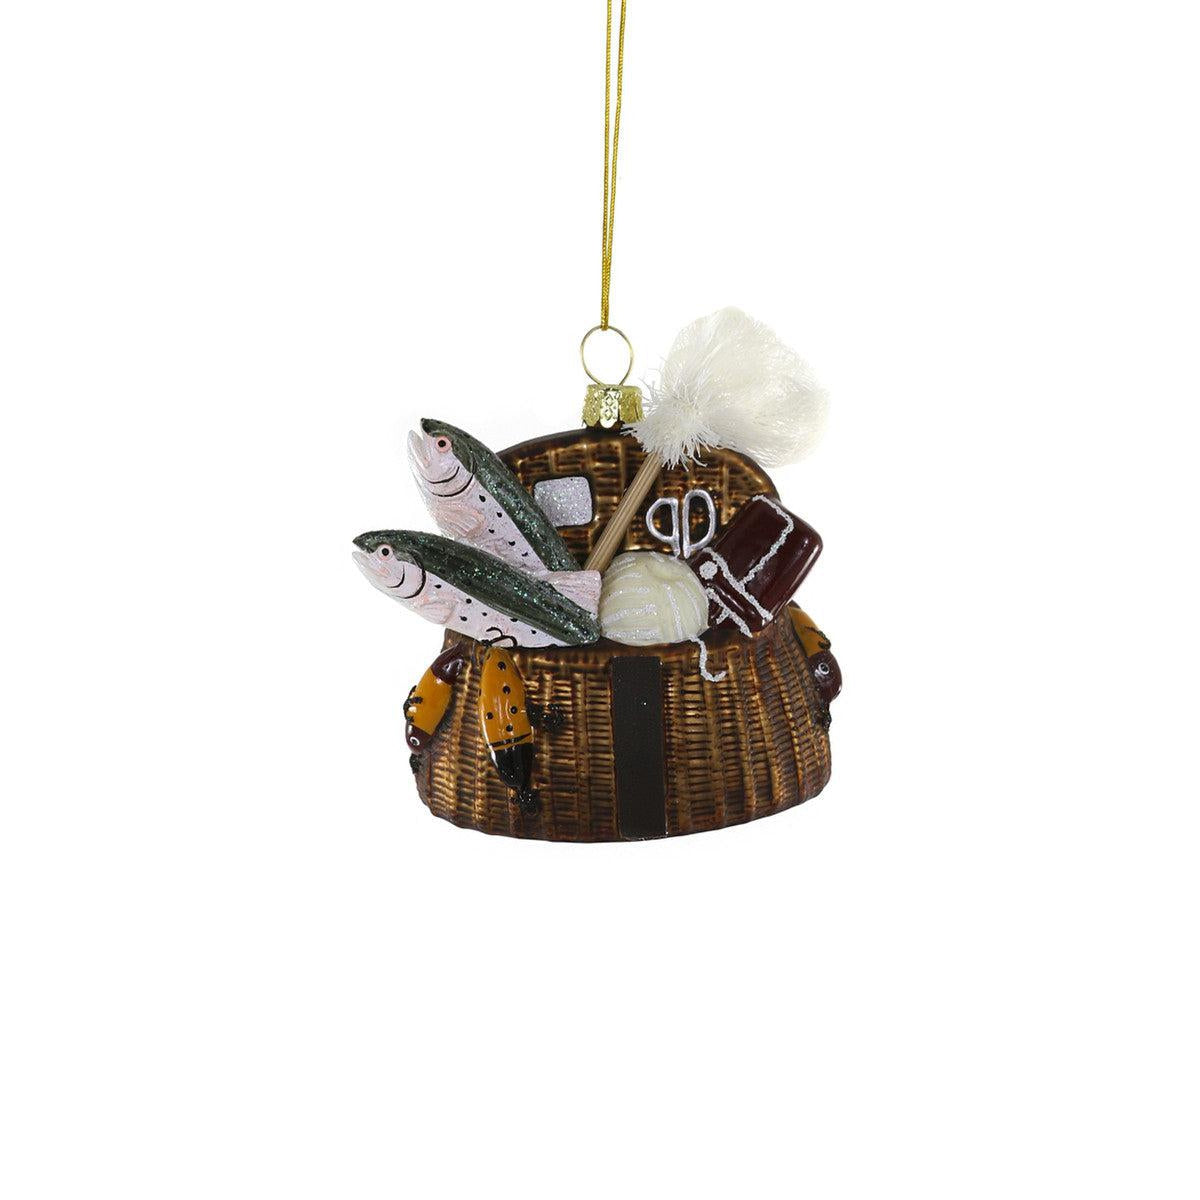 Vintage Fishing Creel Ornament – Burro